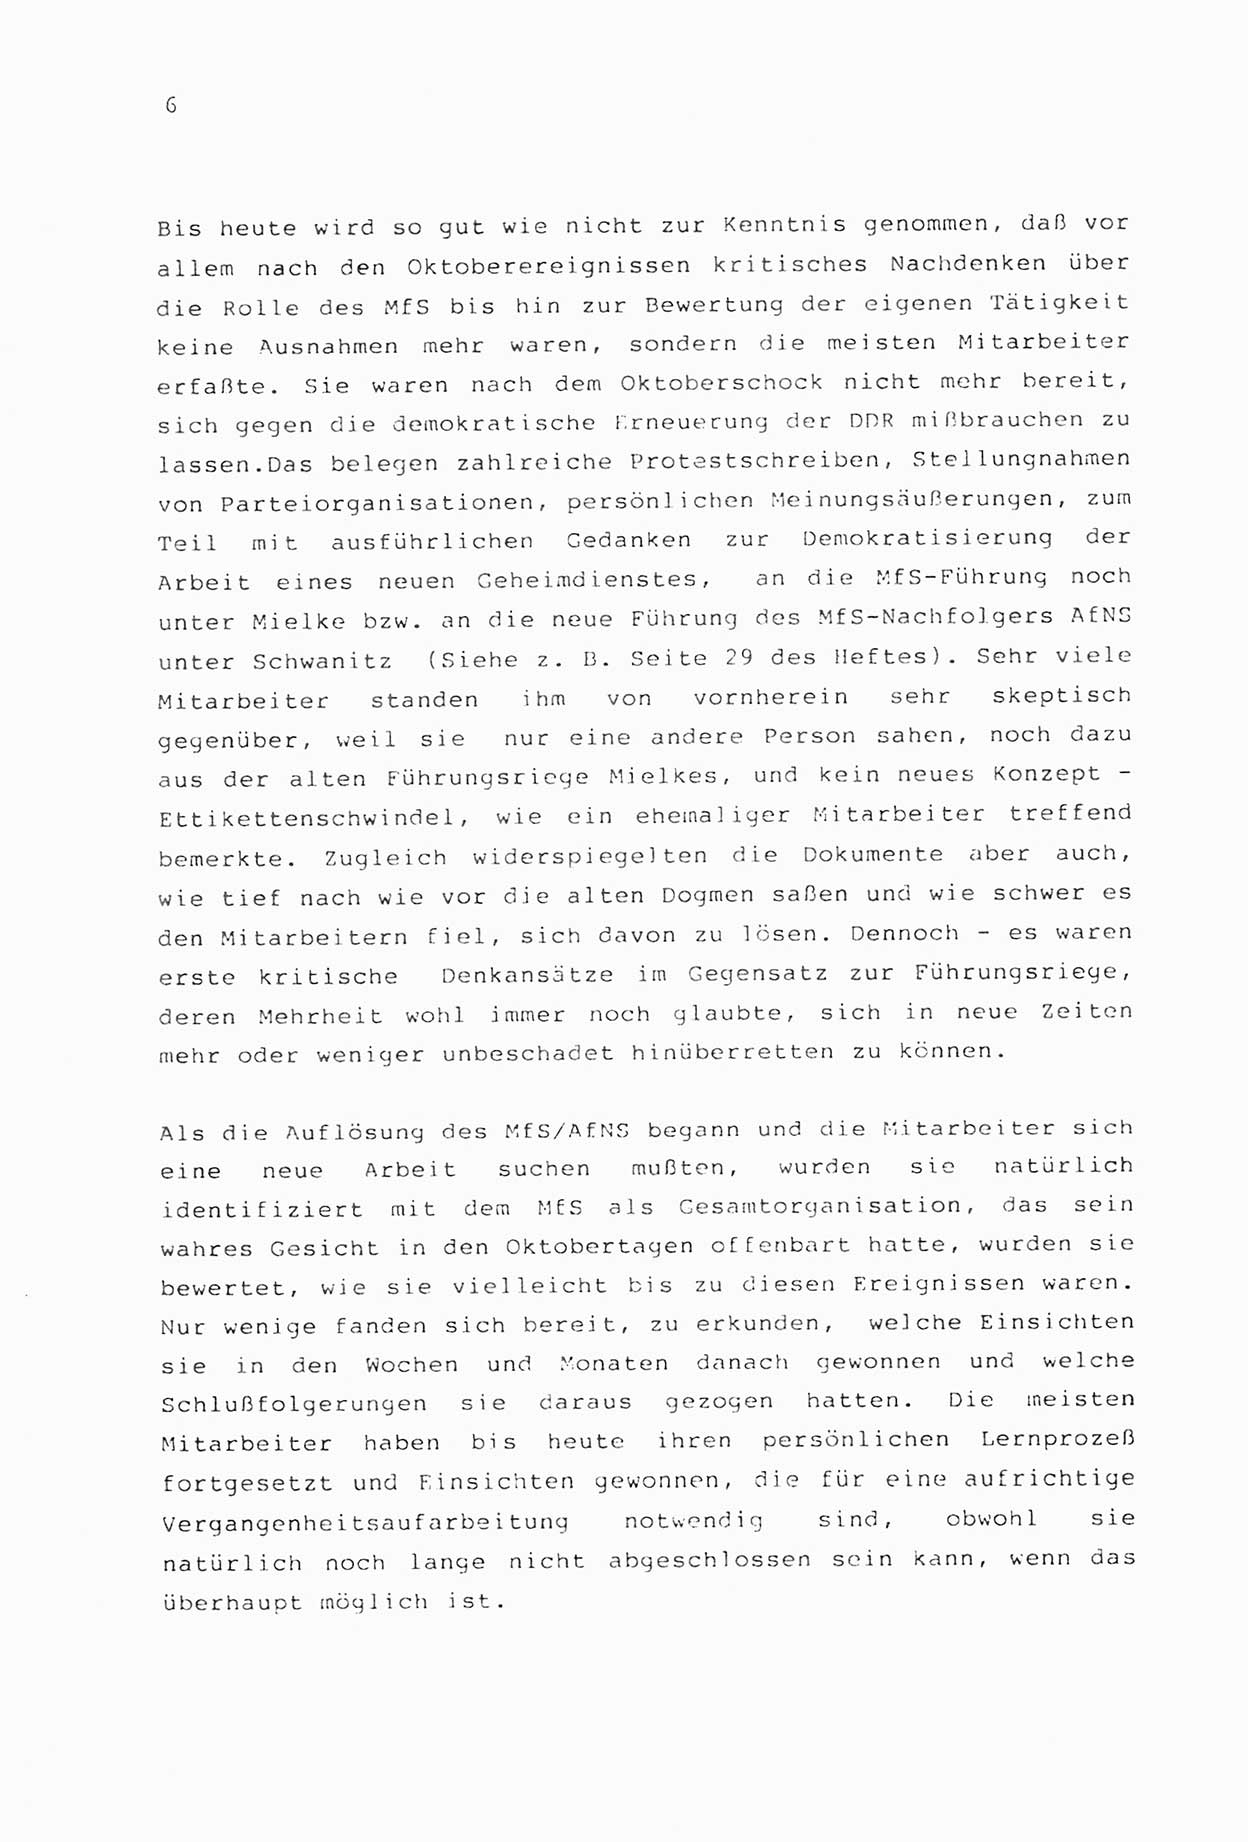 Zwie-Gespräch, Beiträge zur Aufarbeitung der Stasi-Vergangenheit [Deutsche Demokratische Republik (DDR)], Ausgabe Nr. 2, Berlin 1991, Seite 6 (Zwie-Gespr. Ausg. 2 1991, S. 6)